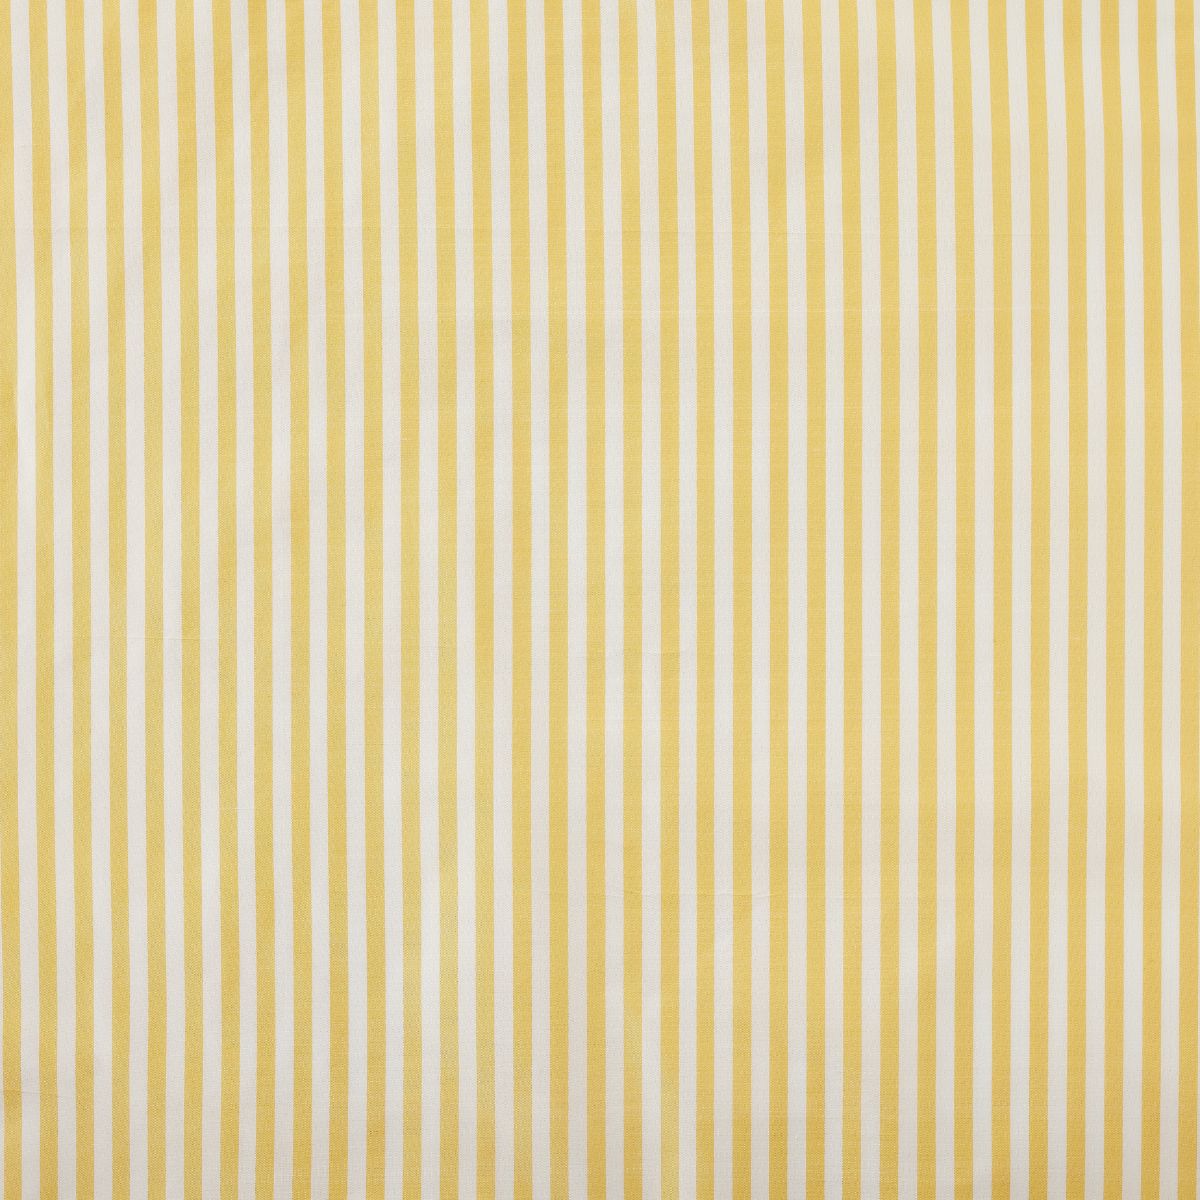 Noelle Stripe in Lemon Fabric Swatch